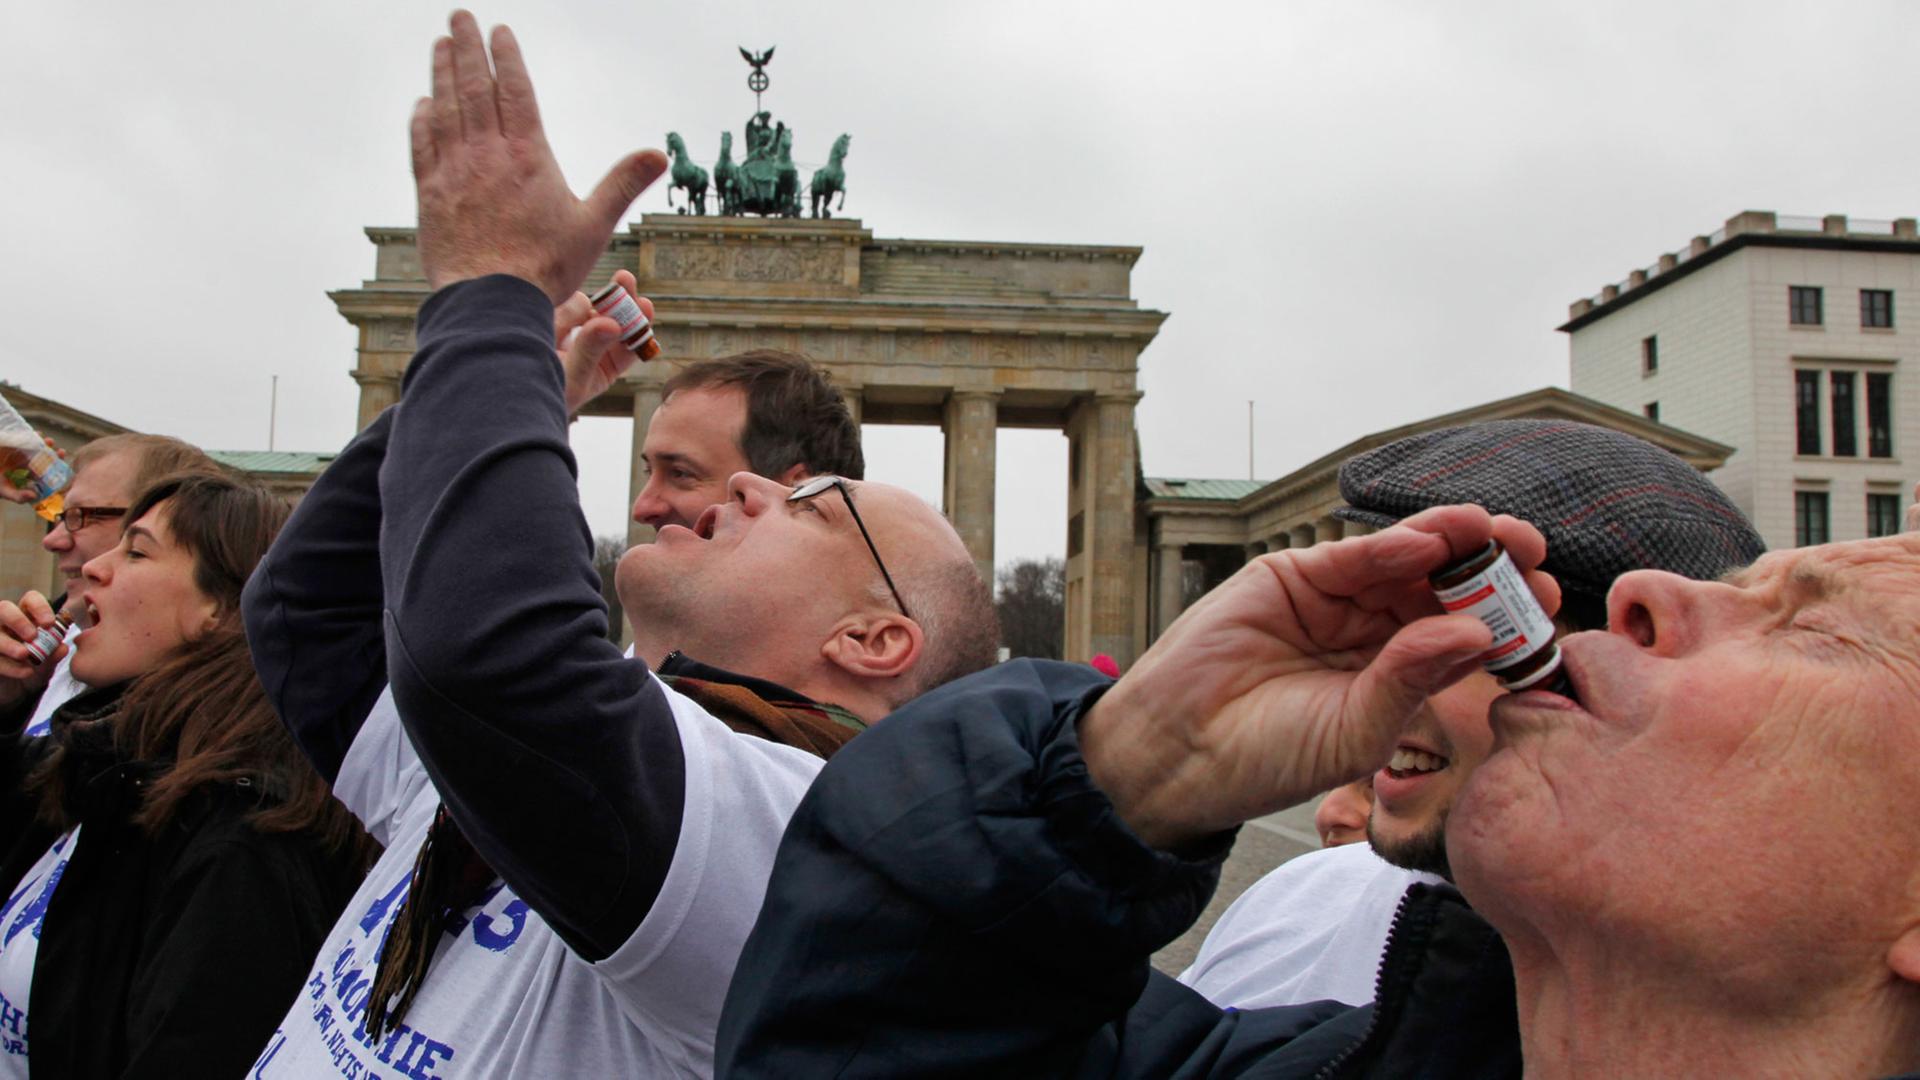 Mitglieder der "Berliner Skeptiker" schlucken im Februar 2011 in Berlin vor dem Brandenburger Tor eine "Überdosis" eines homöopathischen Mittels